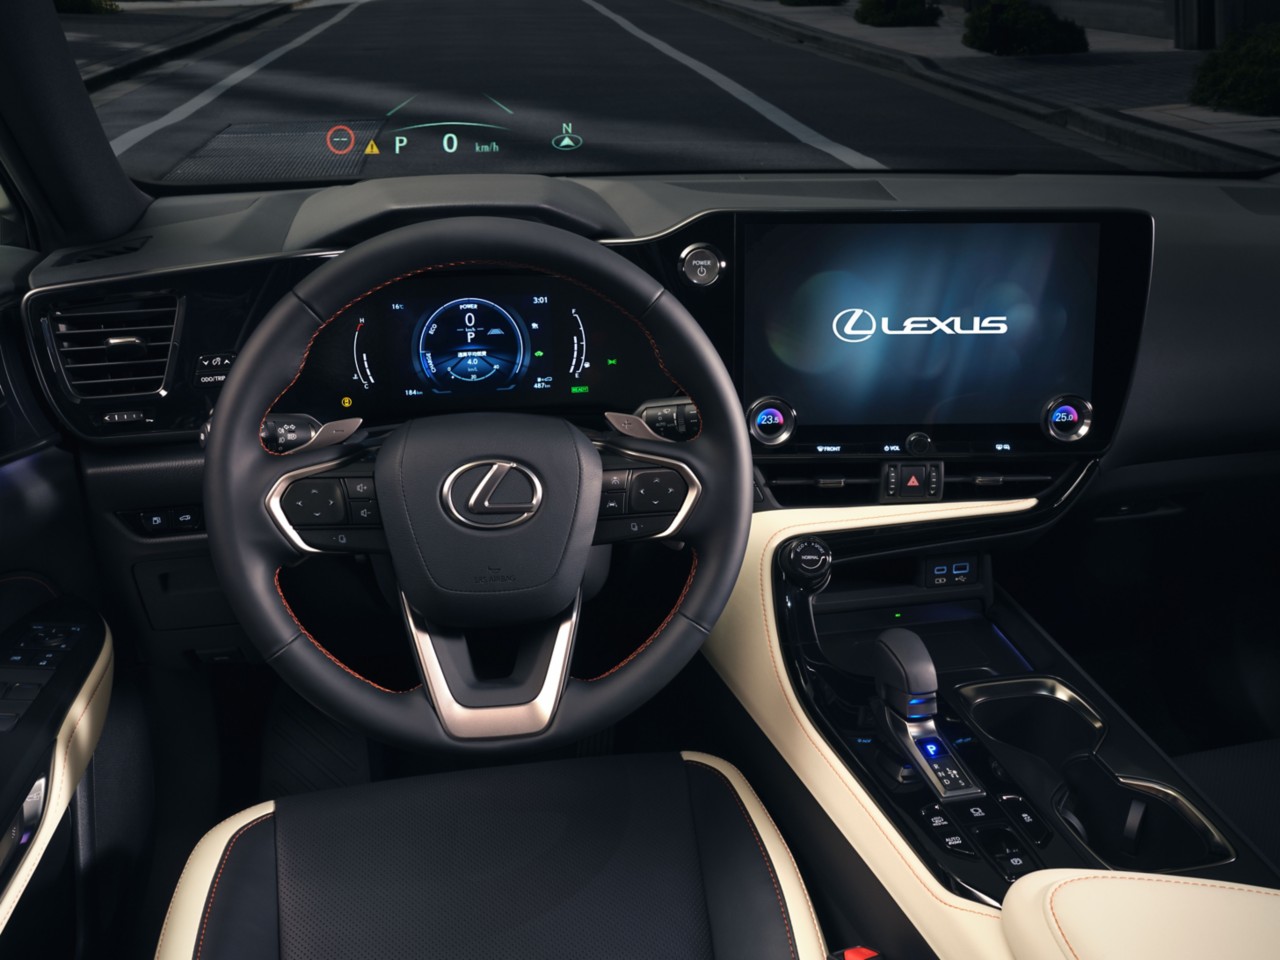 interior of a Lexus car